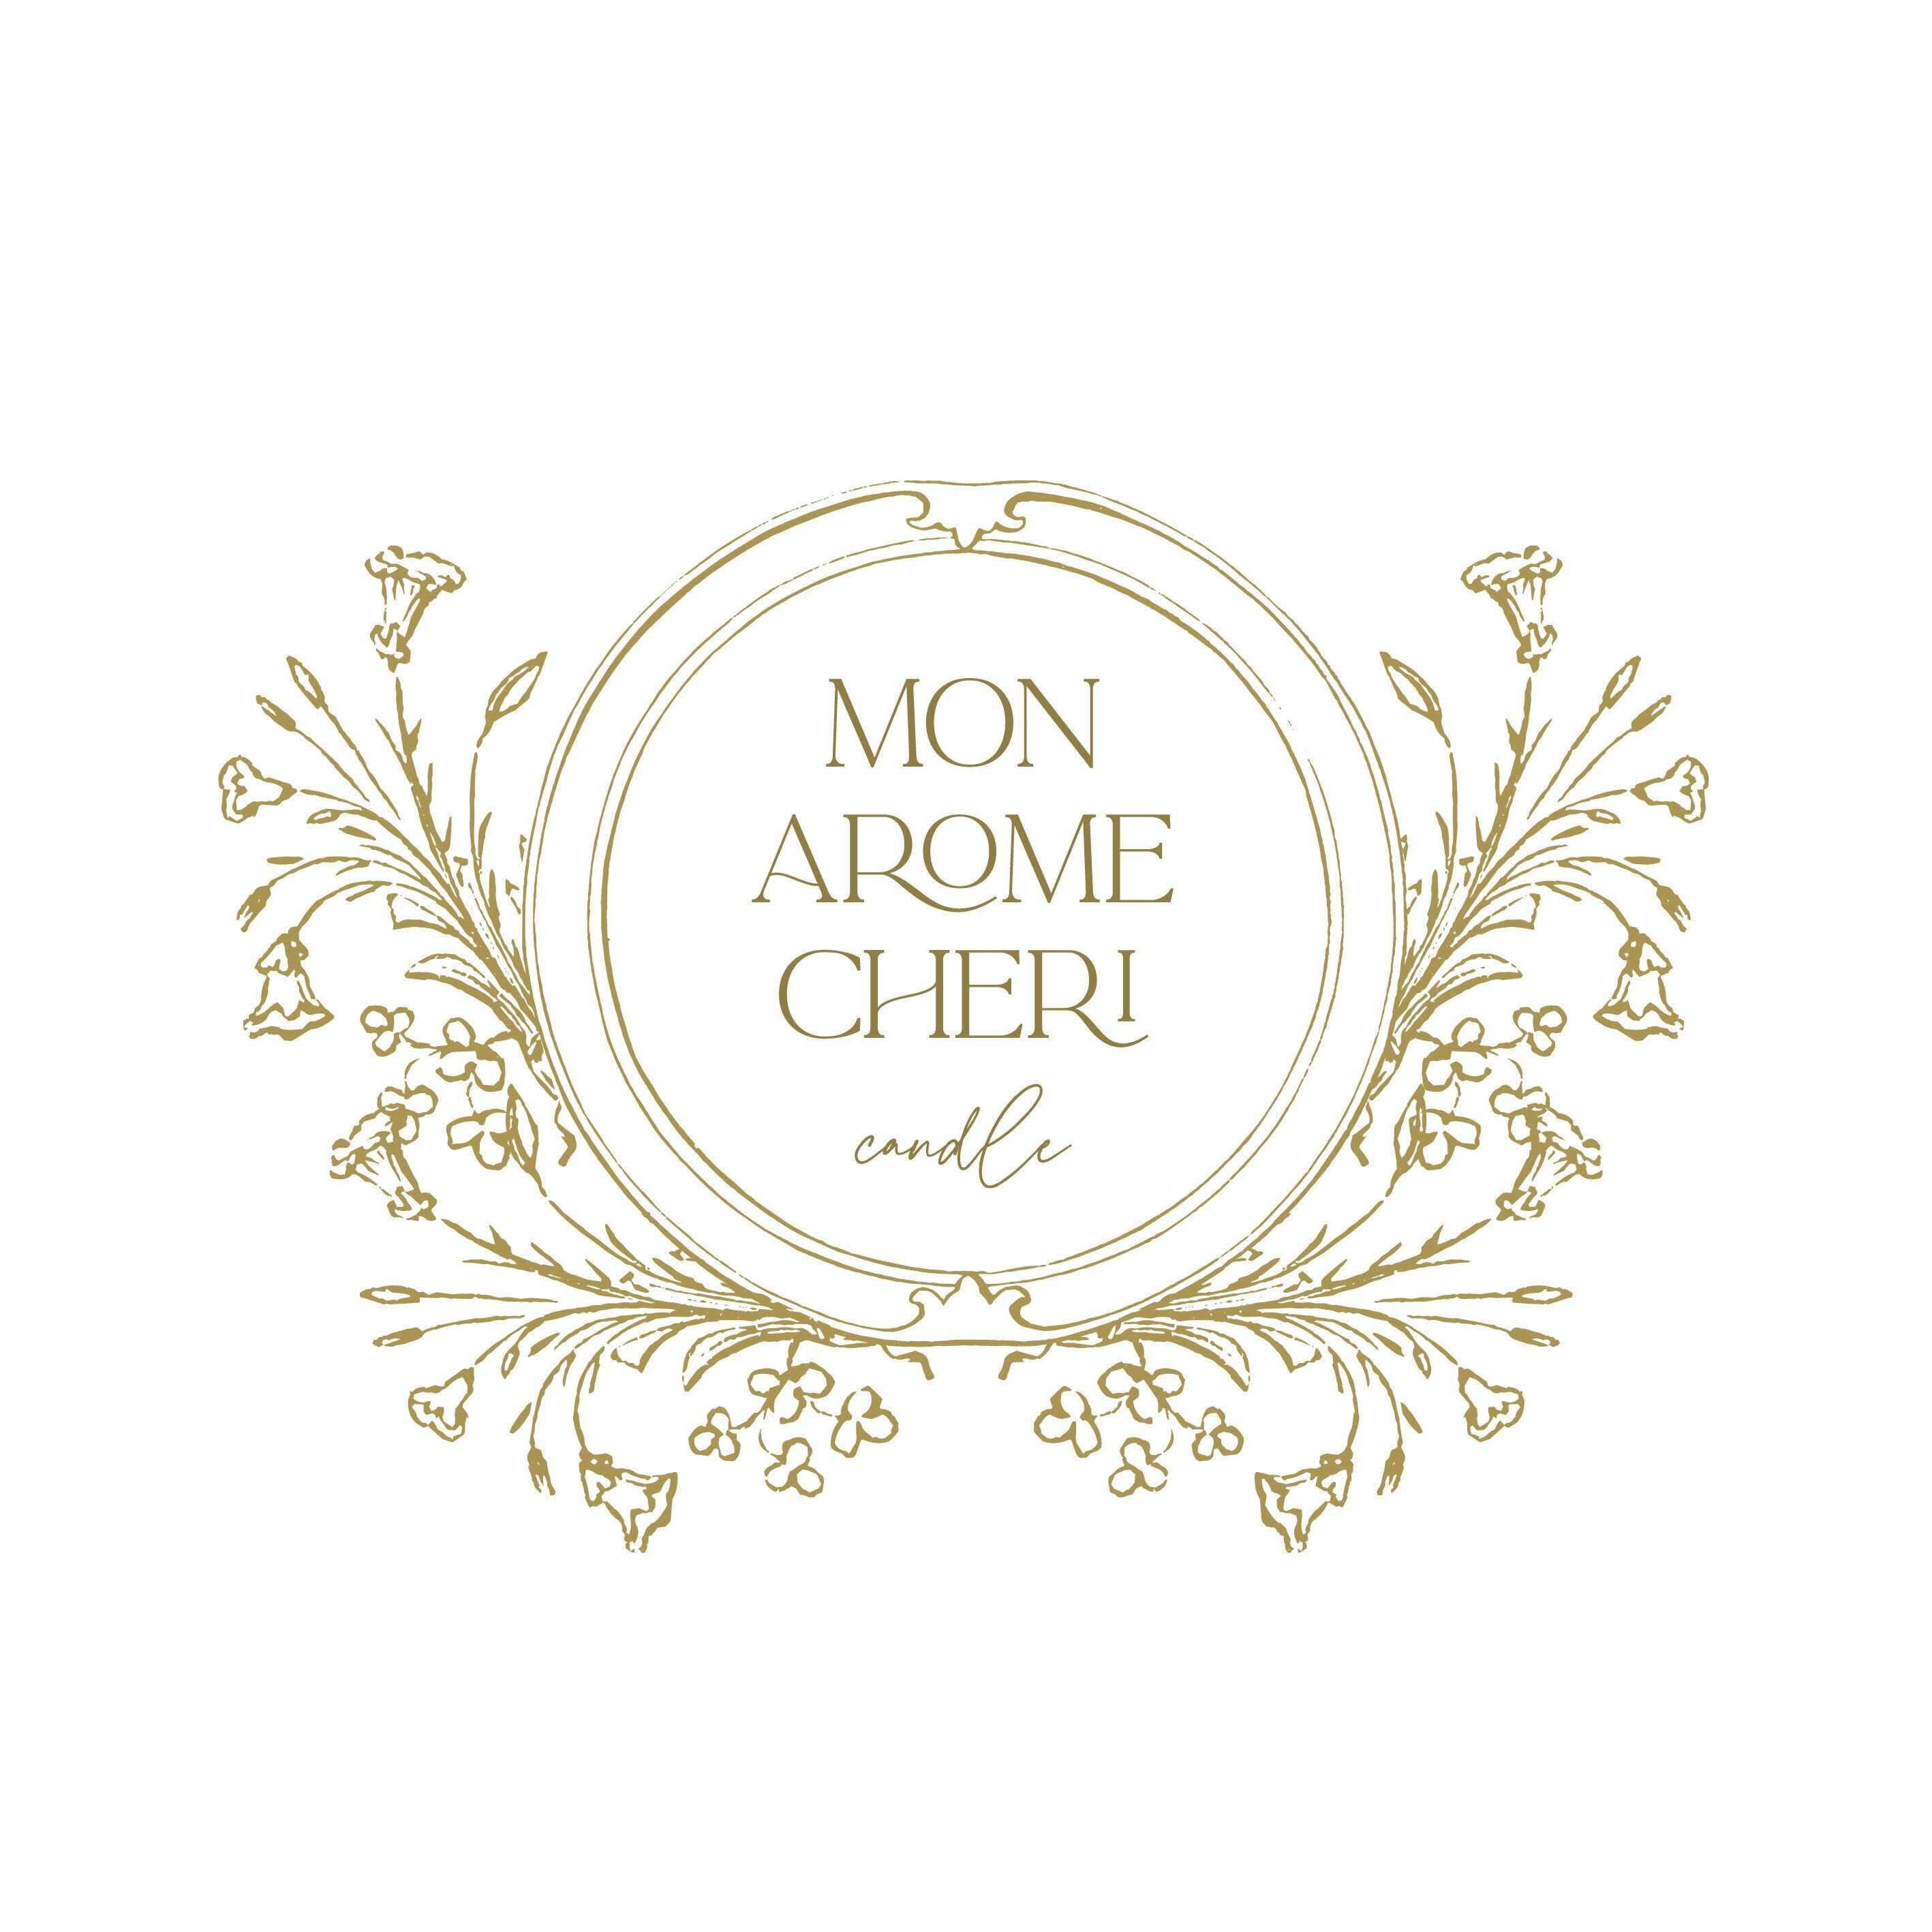 MON AROME CHERI candle〜モナロームシェリキャンドル〜